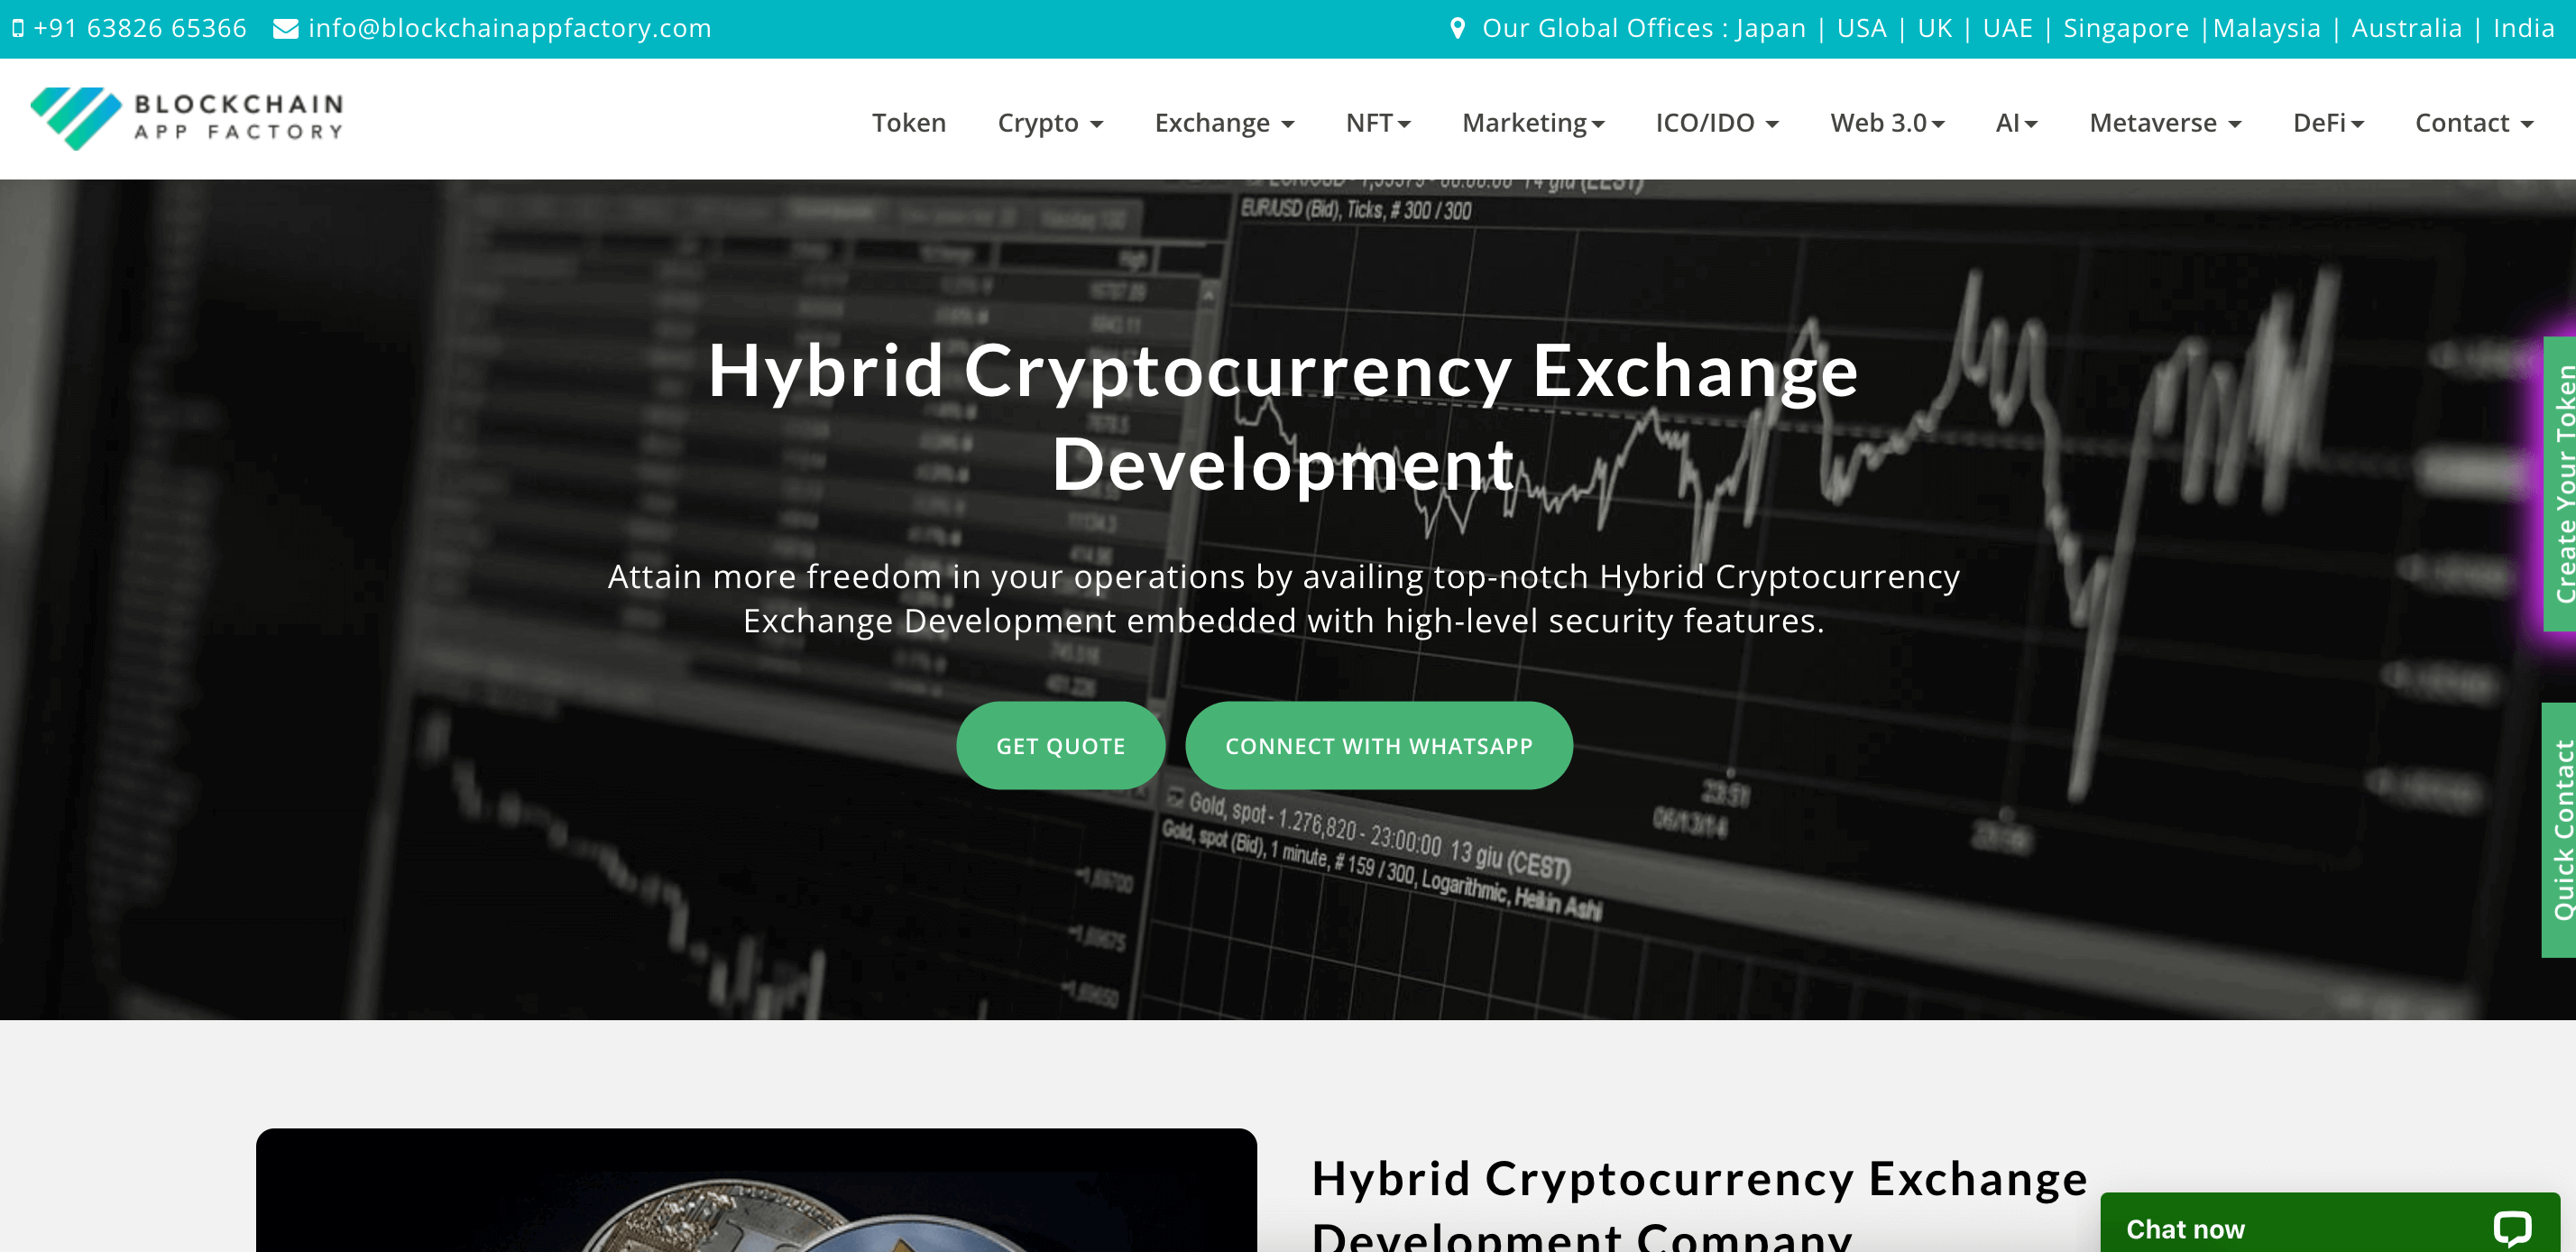 Top Hybrid Crypto Exchange Development Companies